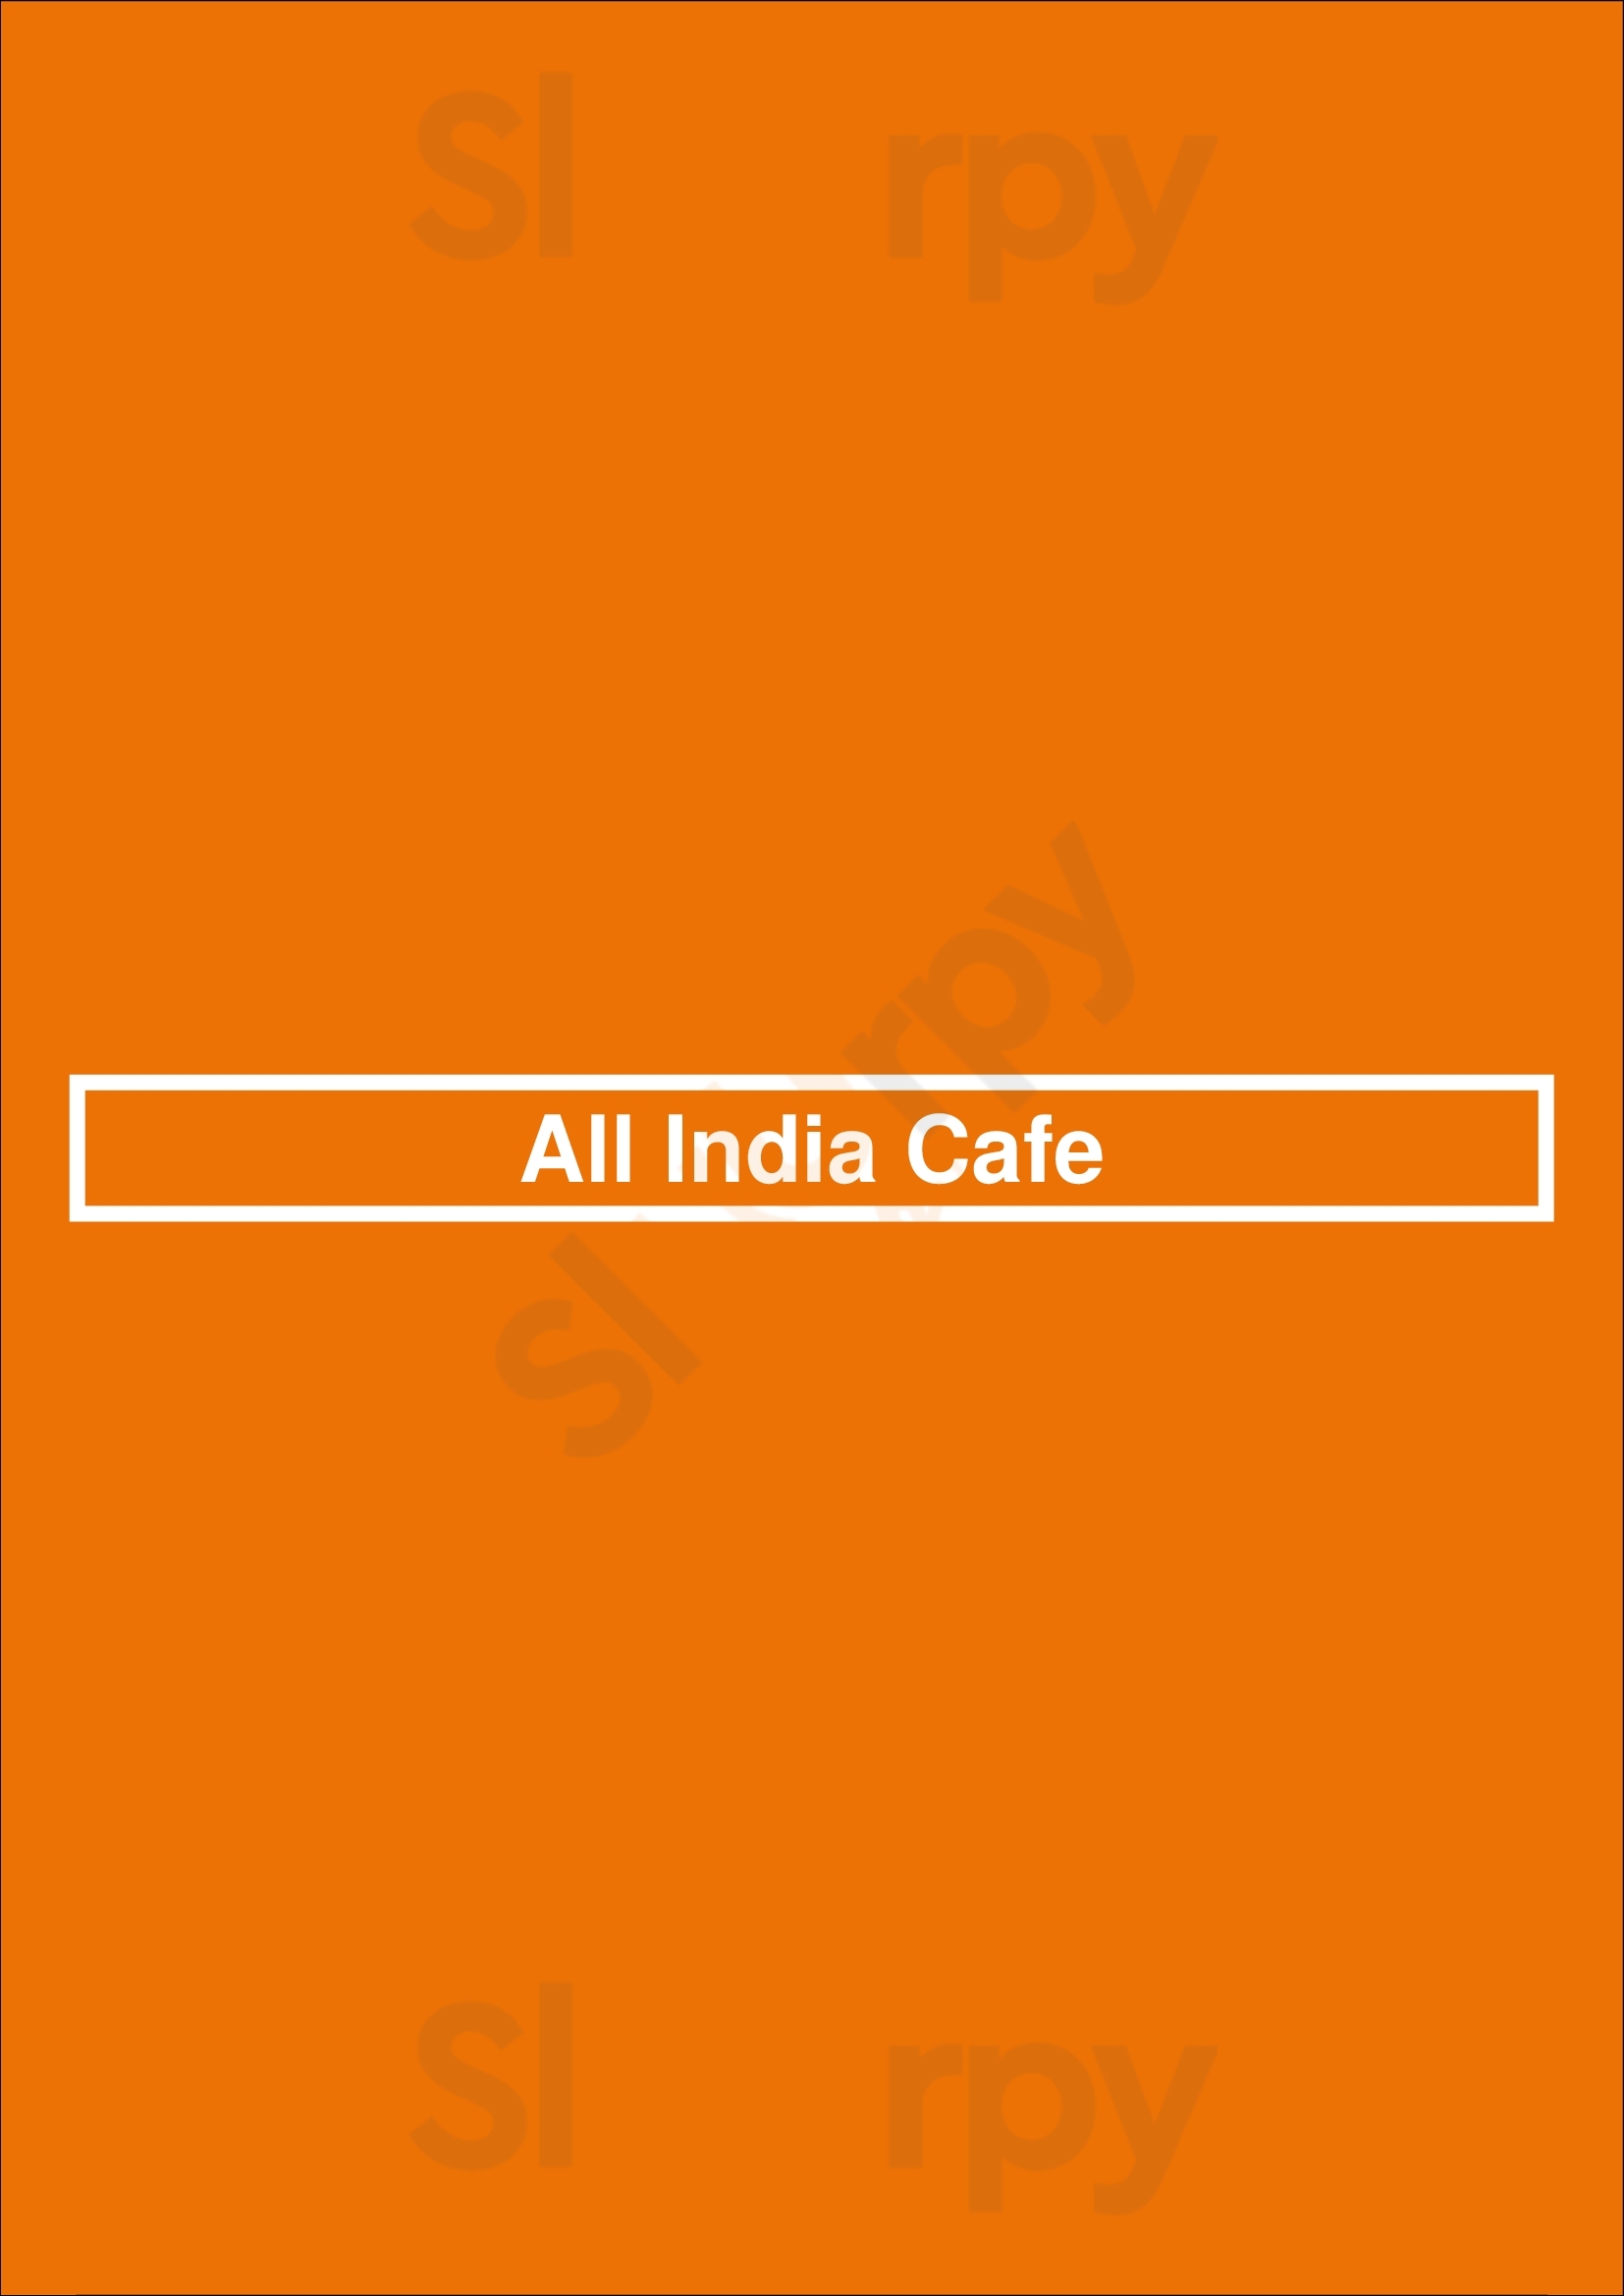 All India Cafe Pasadena Menu - 1